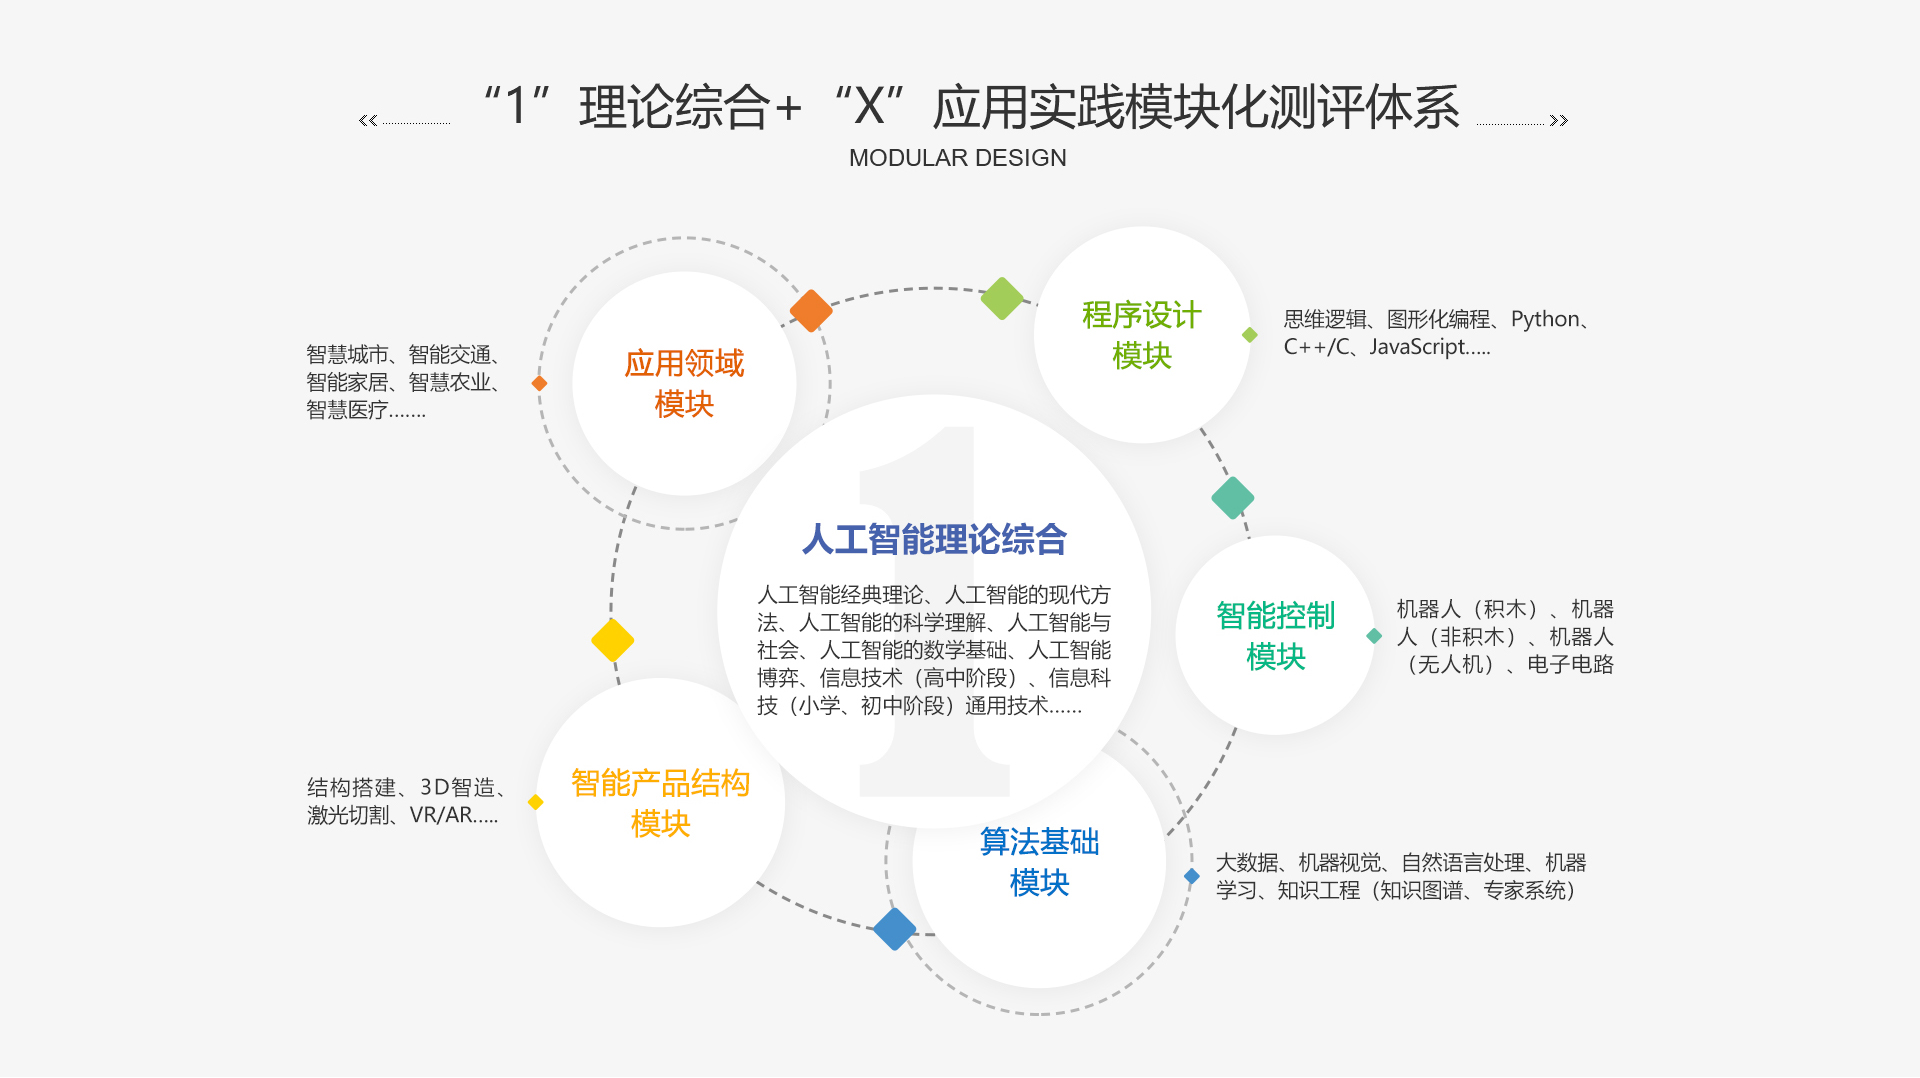 AICE“应用实践”模块“智能控制-Arduino”大纲(图1)